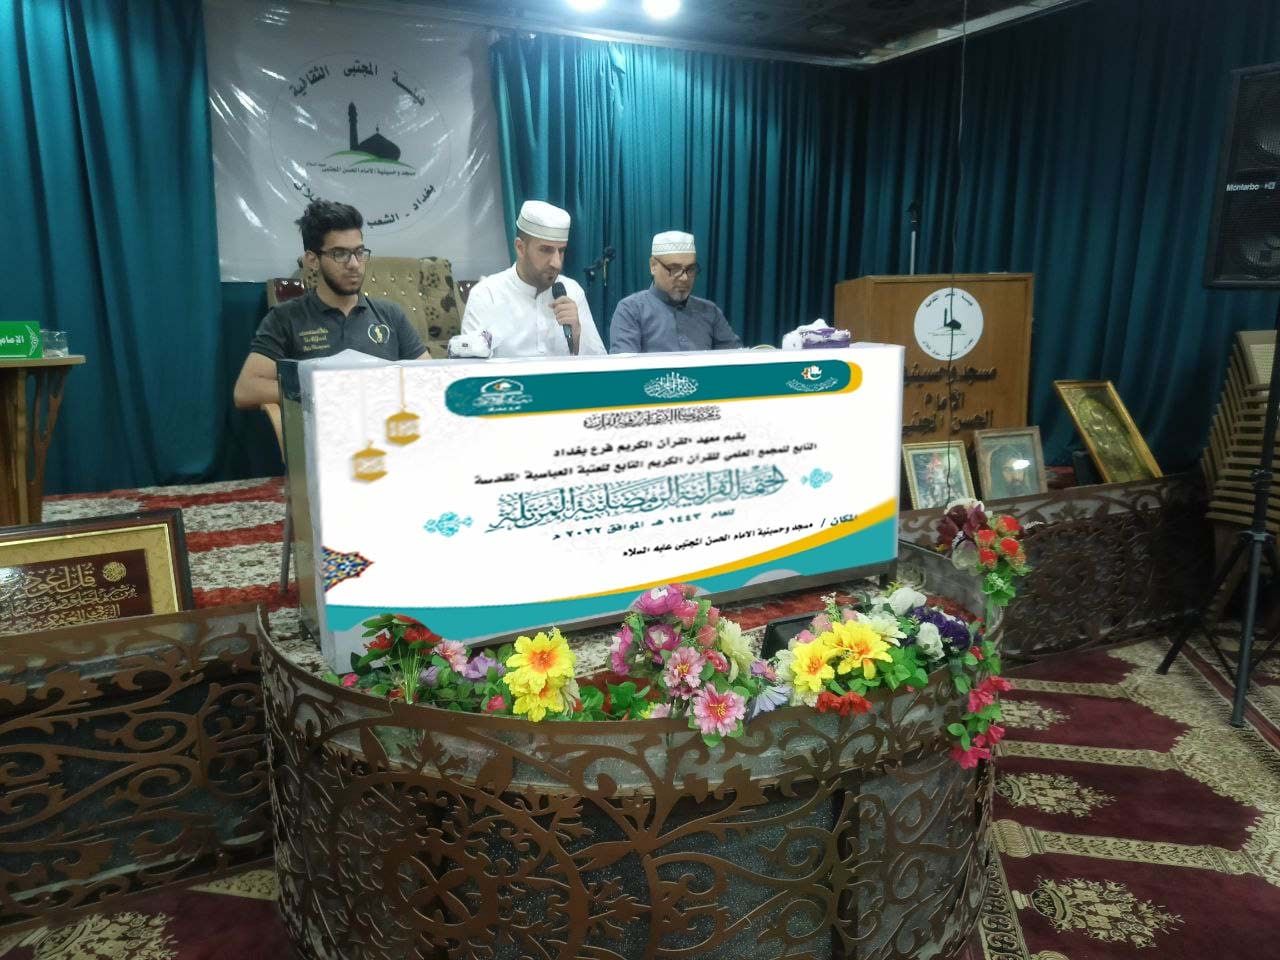 أكثر من 50 ختمة قرآنية مرتلة يحتشد المؤمنون حولها في العاصمة بغداد